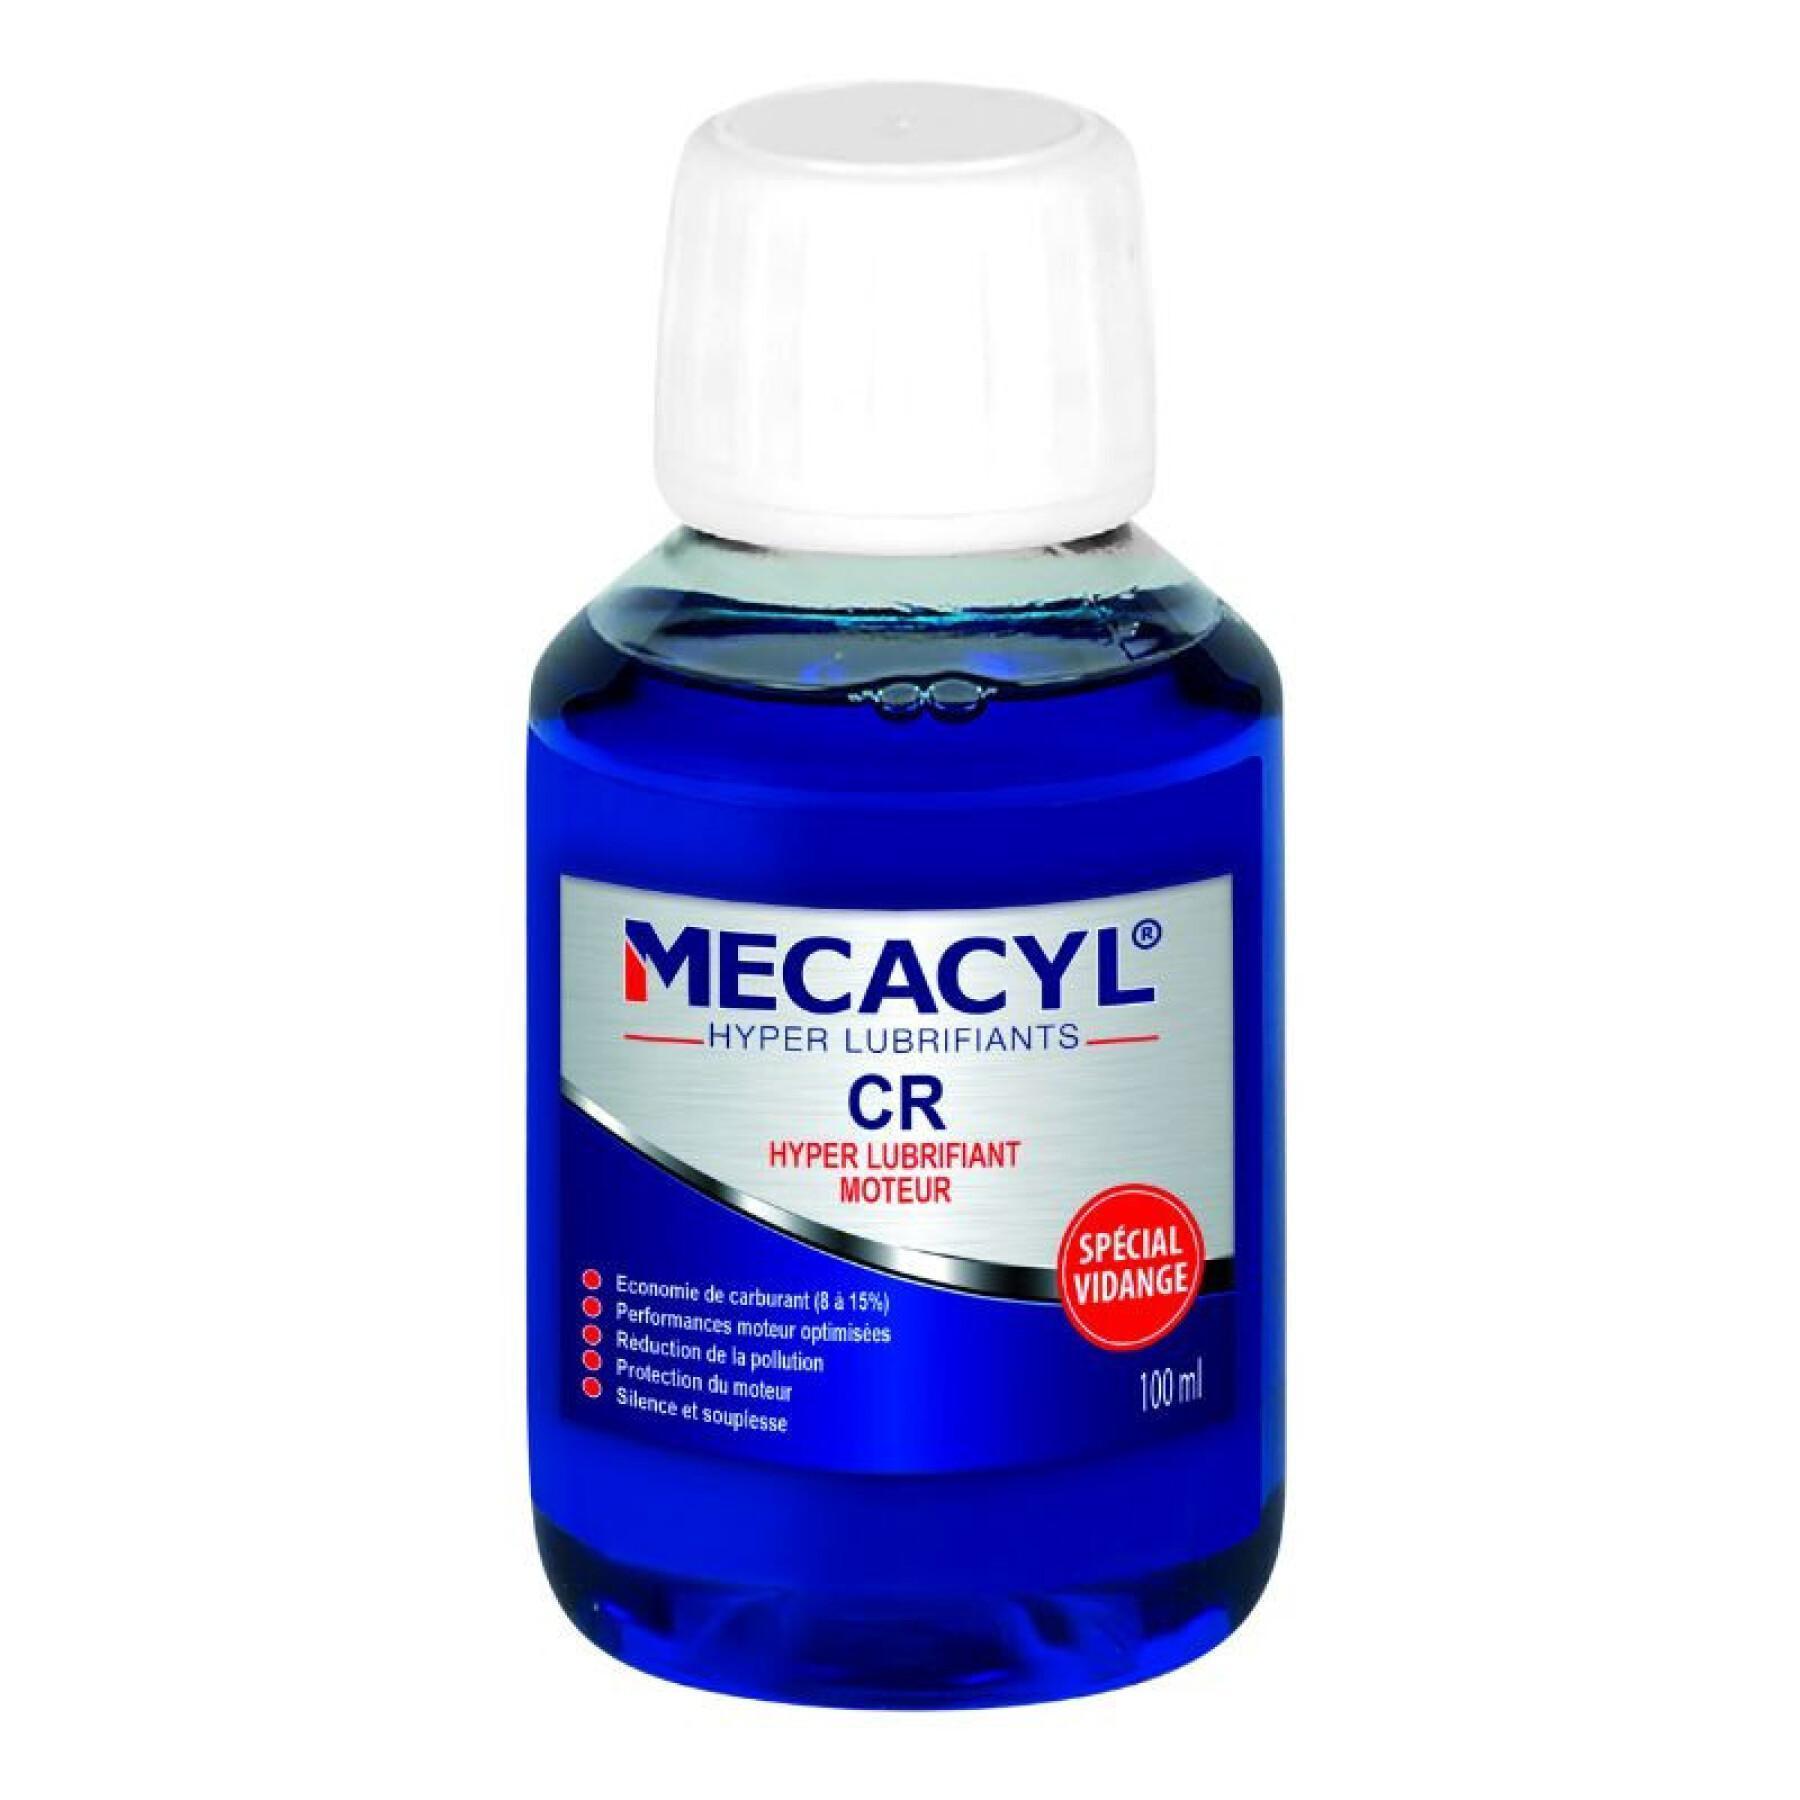 Additif moteur 4t auto hyper lubrifiant special vidange Mecacyl CR 100 ml